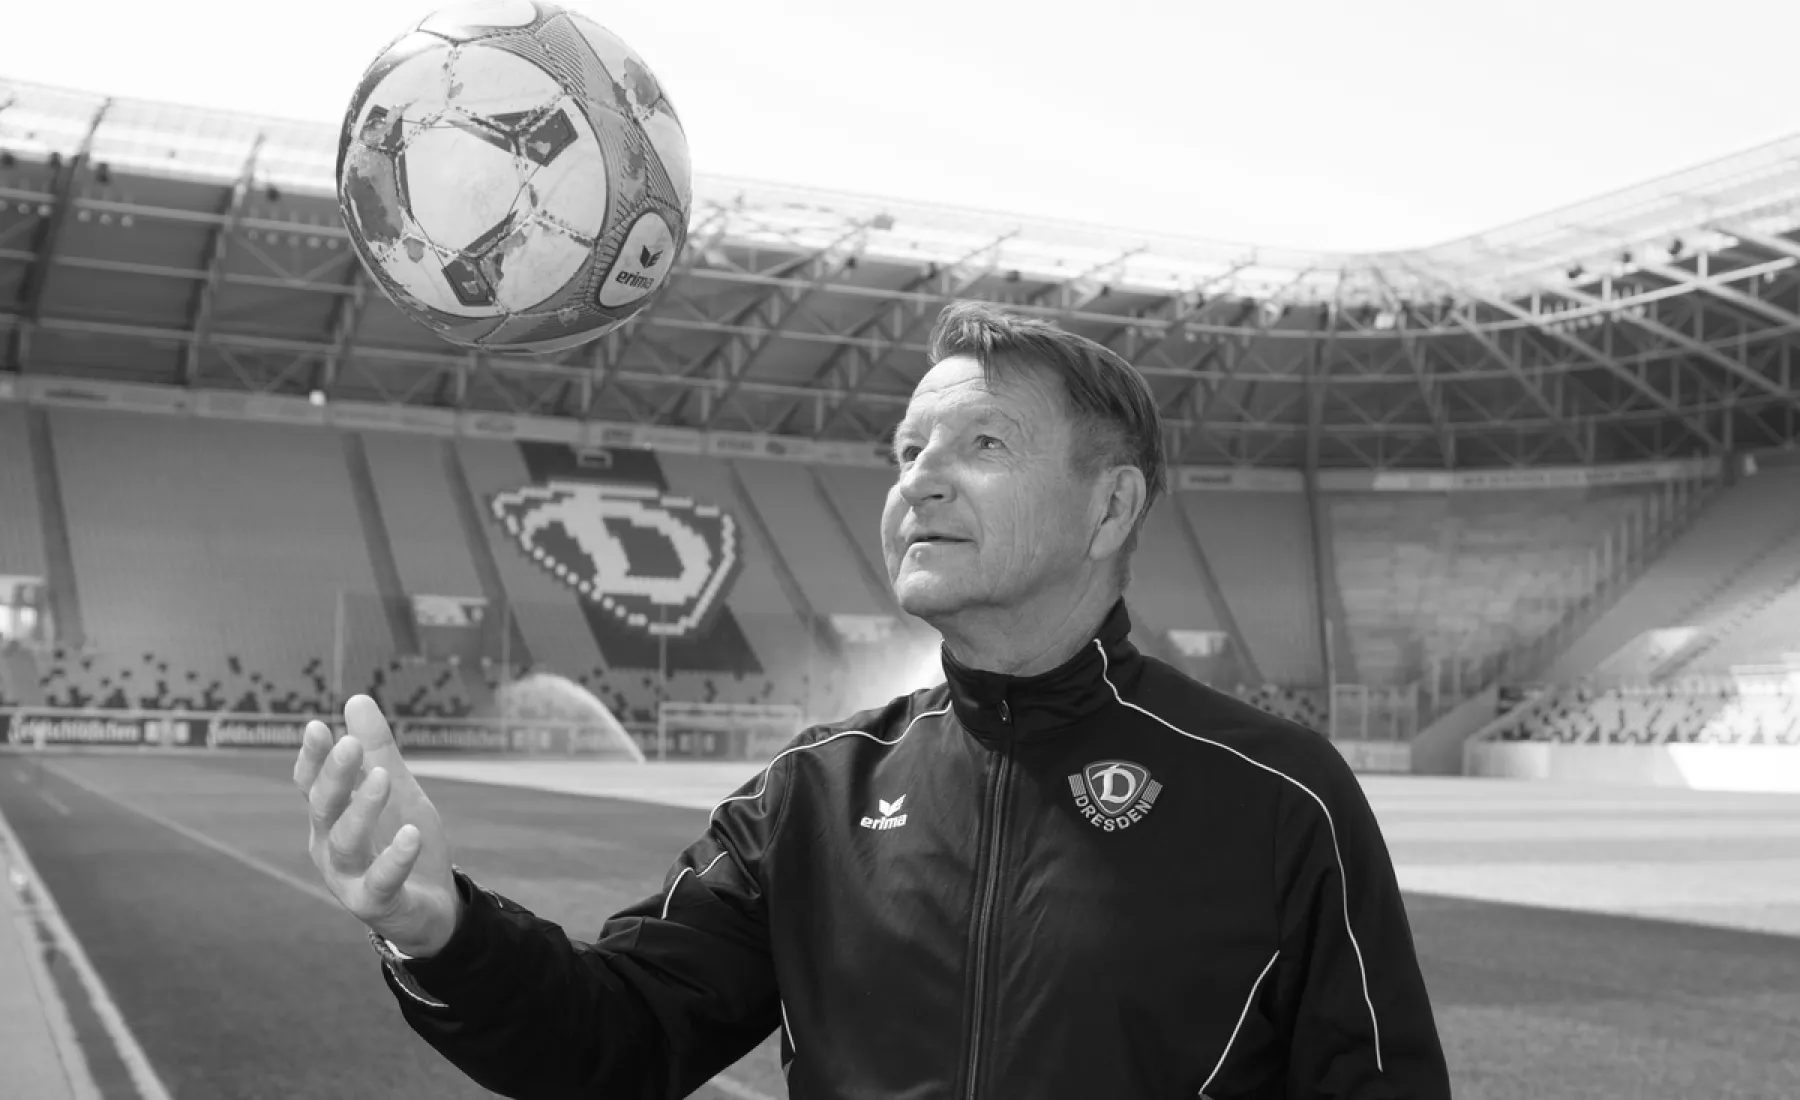 Der ehemalige Fußballspieler Hans-Jürgen Dörner steht im DDV-Stadion und wirft einen Ball hoch